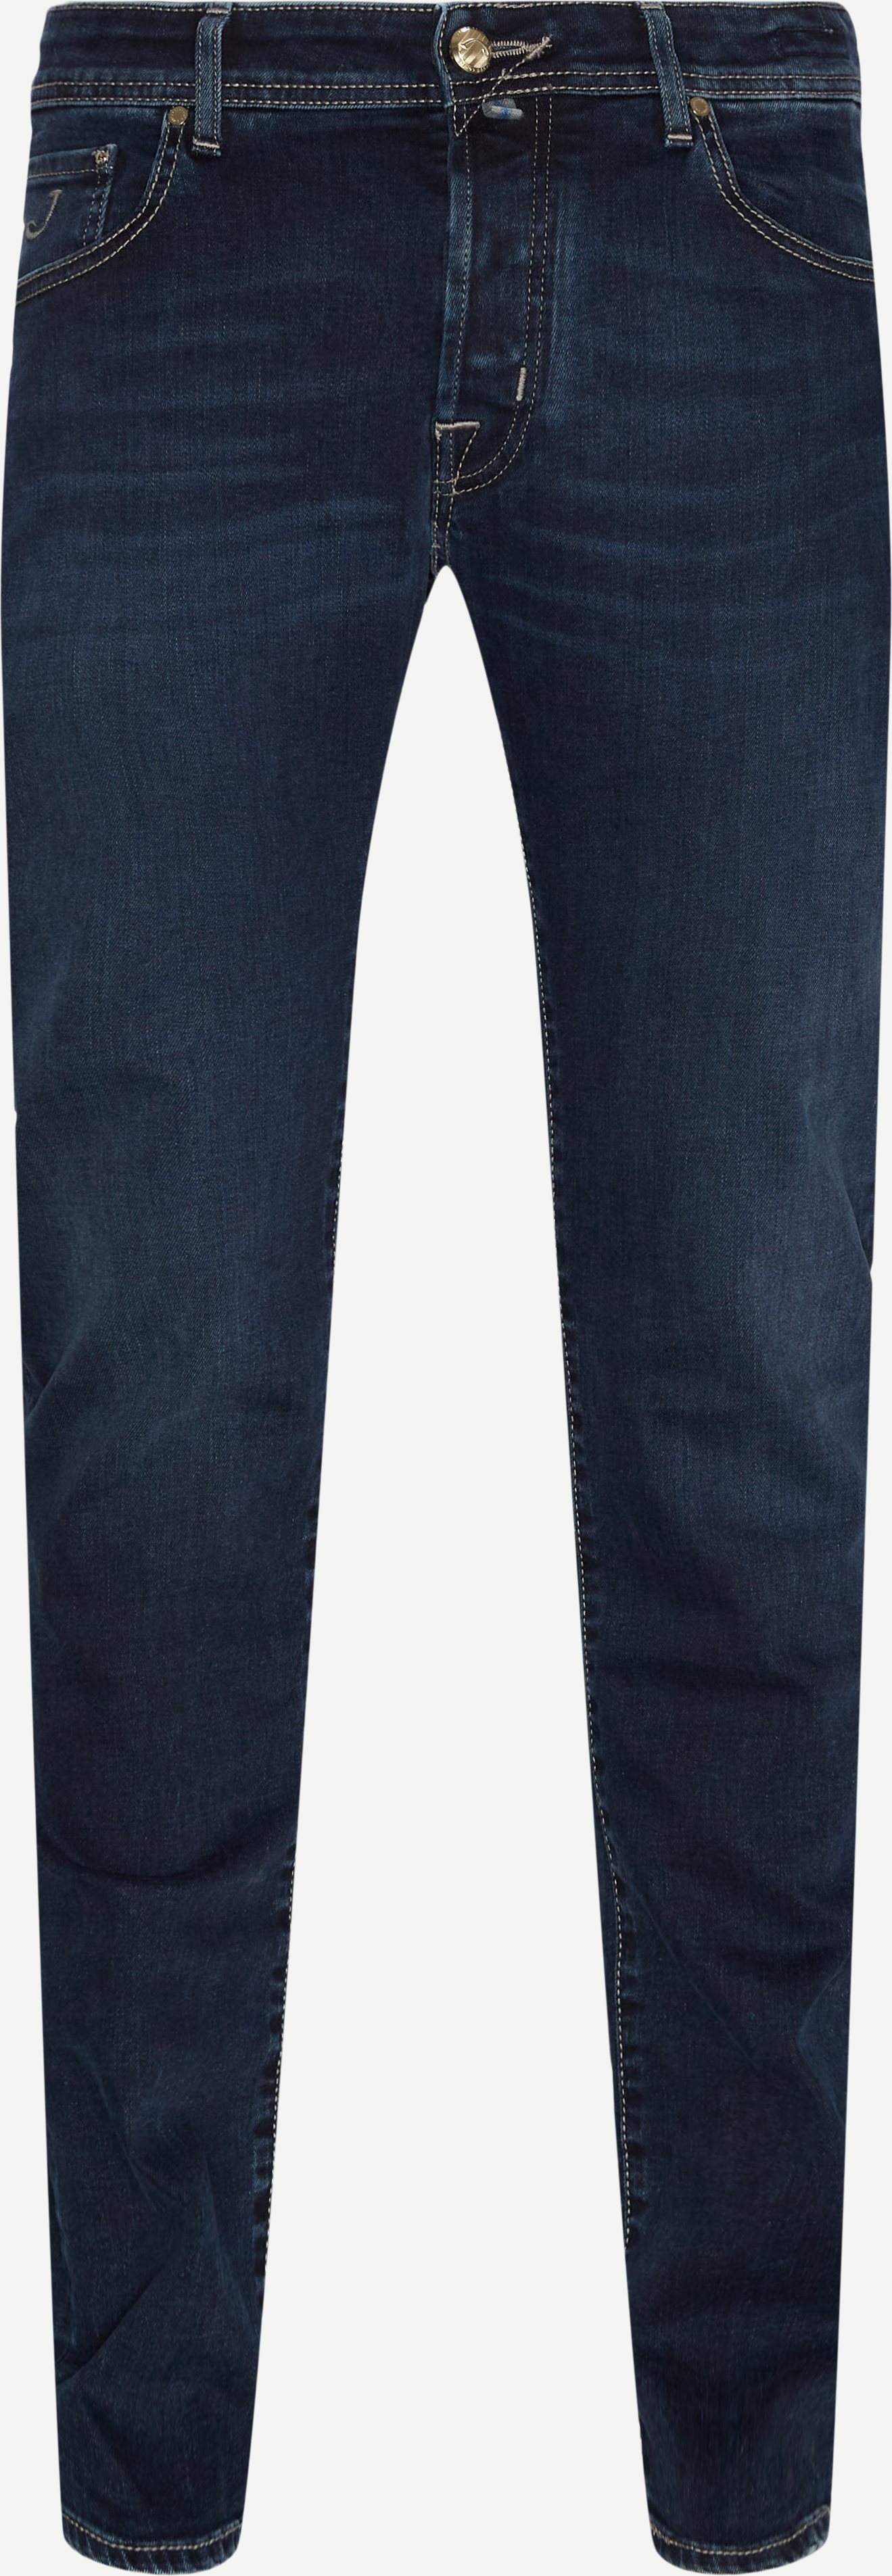 J622 3624 Nick Denim Jeans - Jeans - Slim fit - Denim